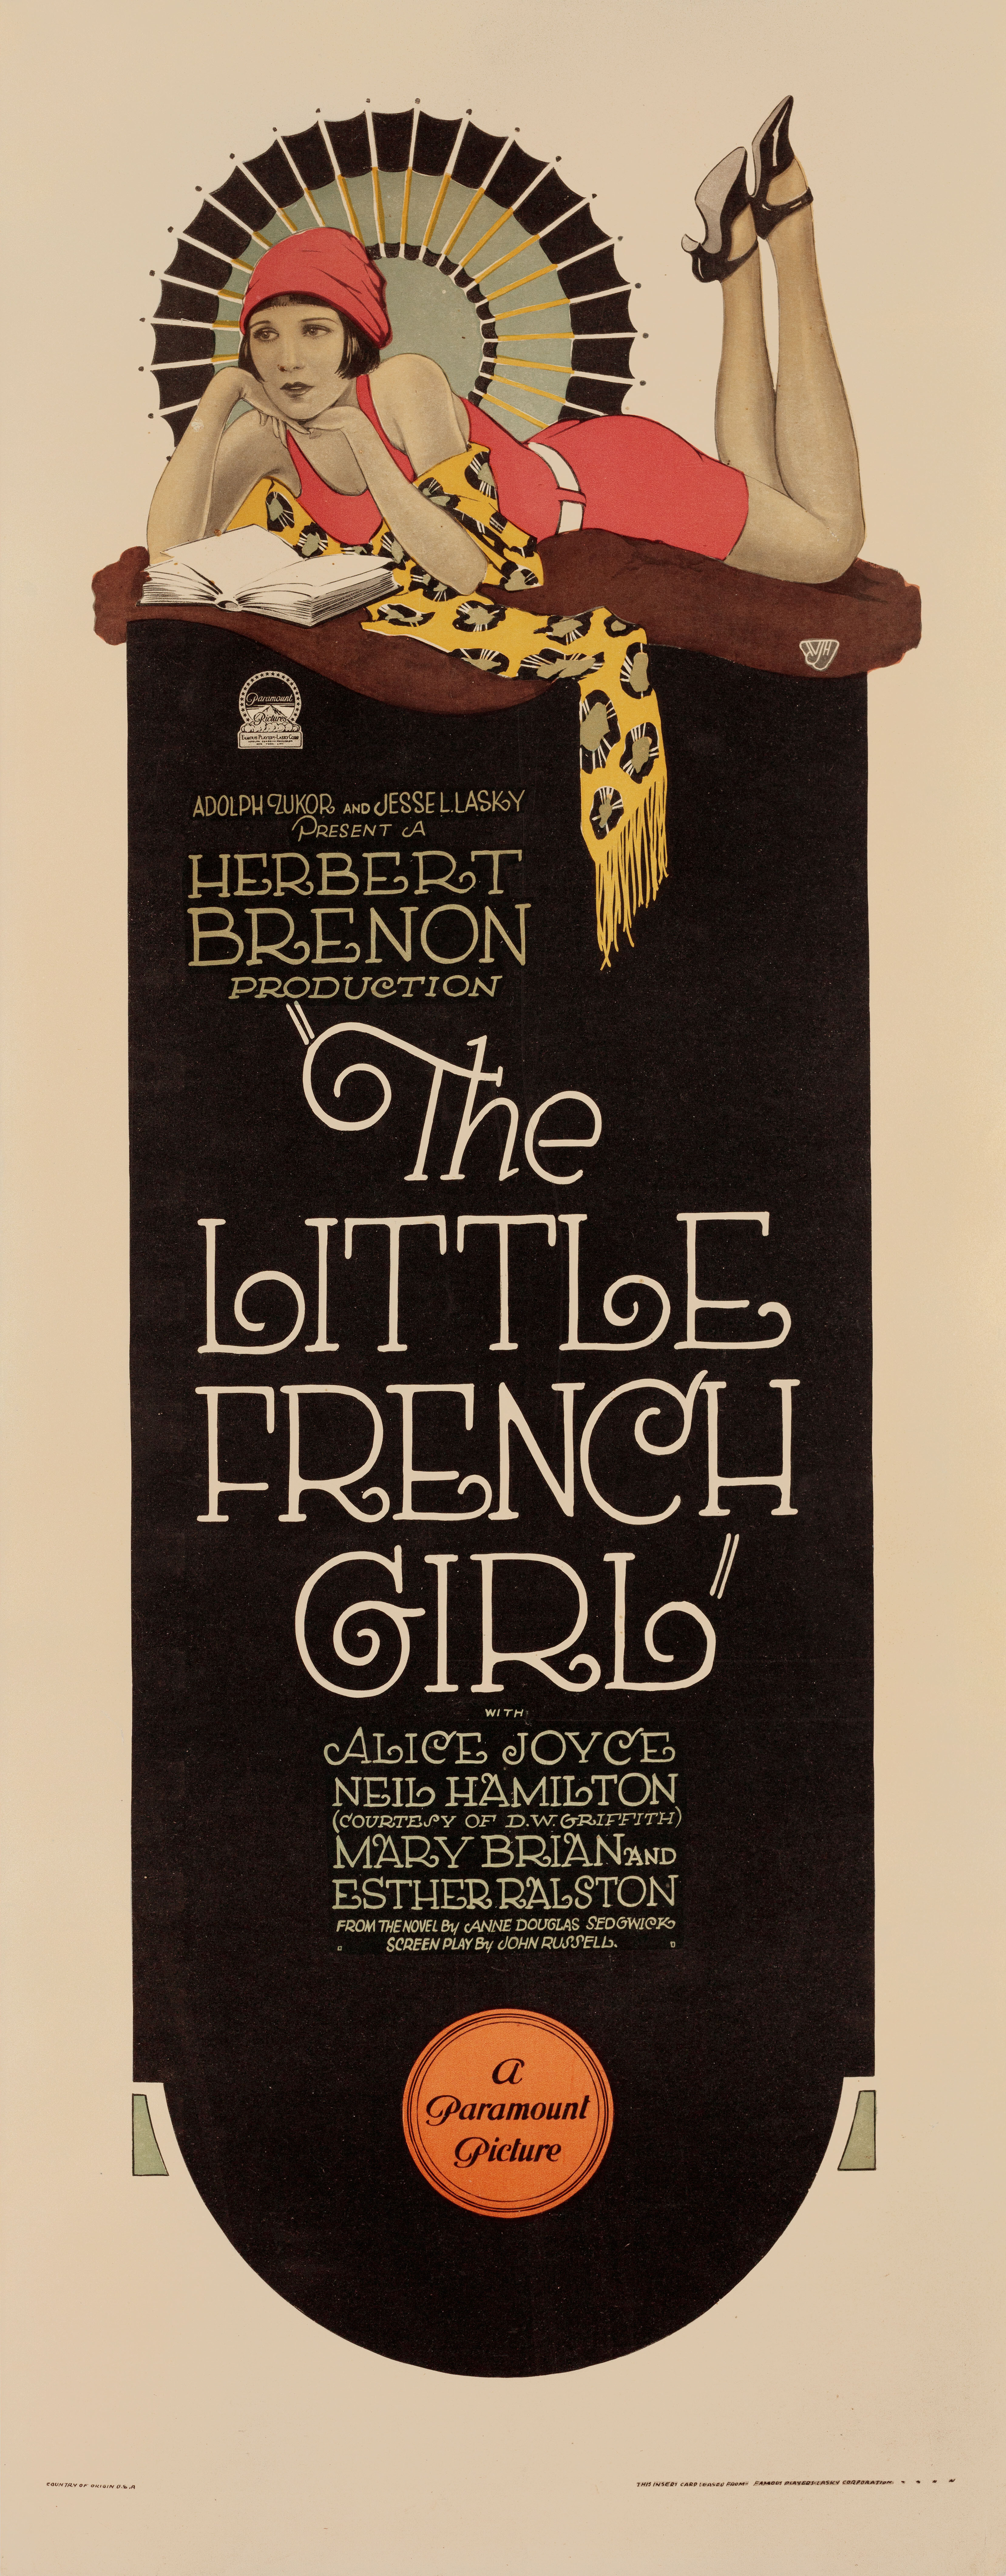 Маленькая французская девочка (The Little French Girl, 1925), режиссёр Герберт Бренон, постер к фильму в стиле ар-деко (США, 1925 год)